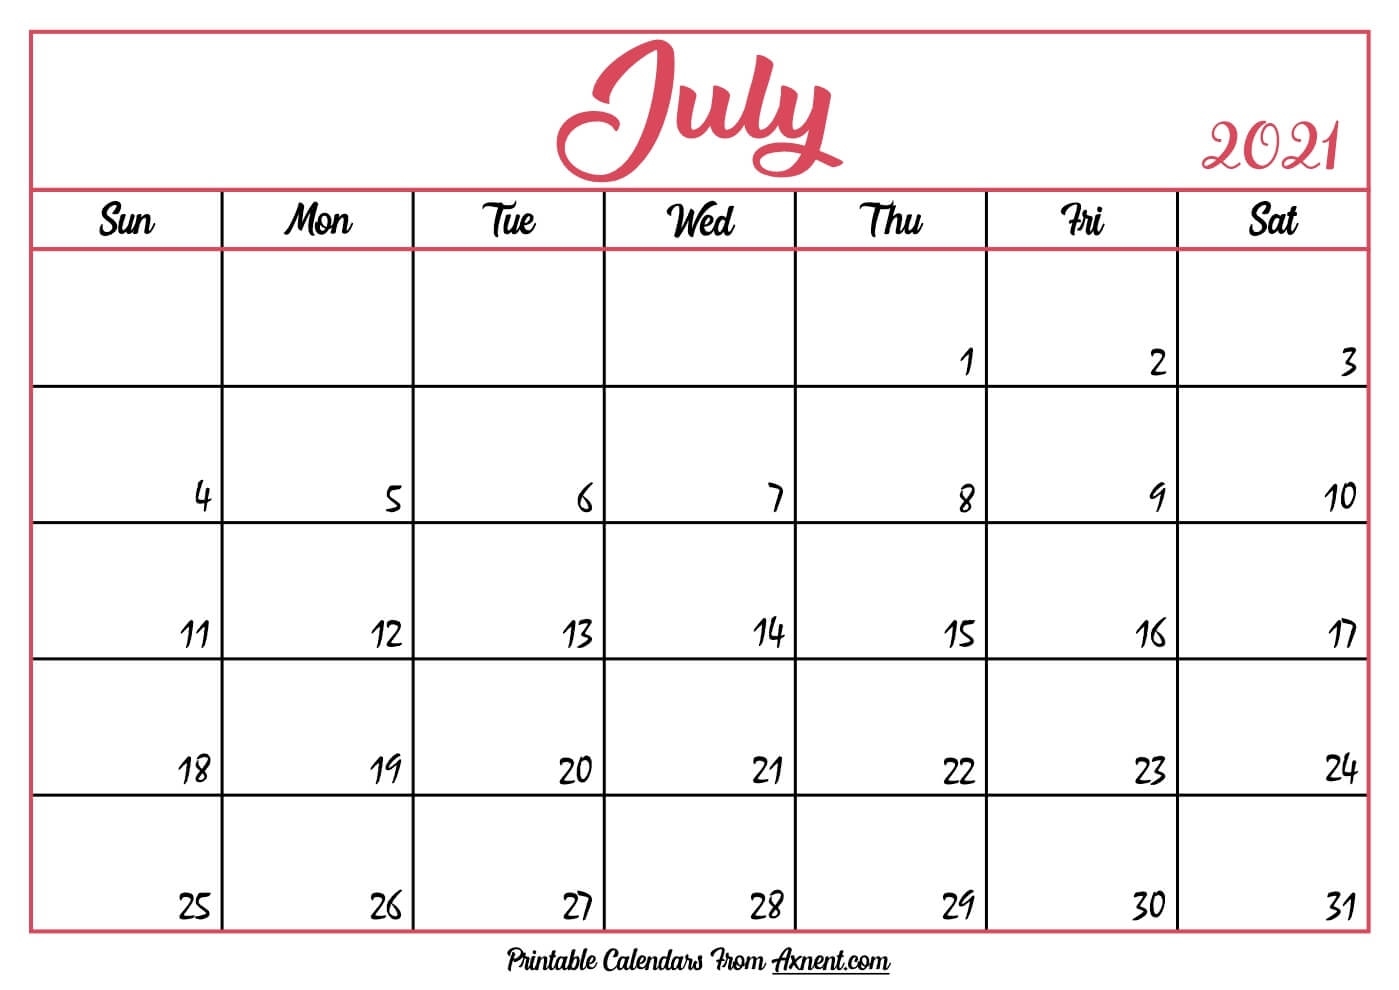 Printable July 2021 Calendar Template - Time Management Tools Printable July 2021 Calendar Template July 2021 Calendar Free Printable